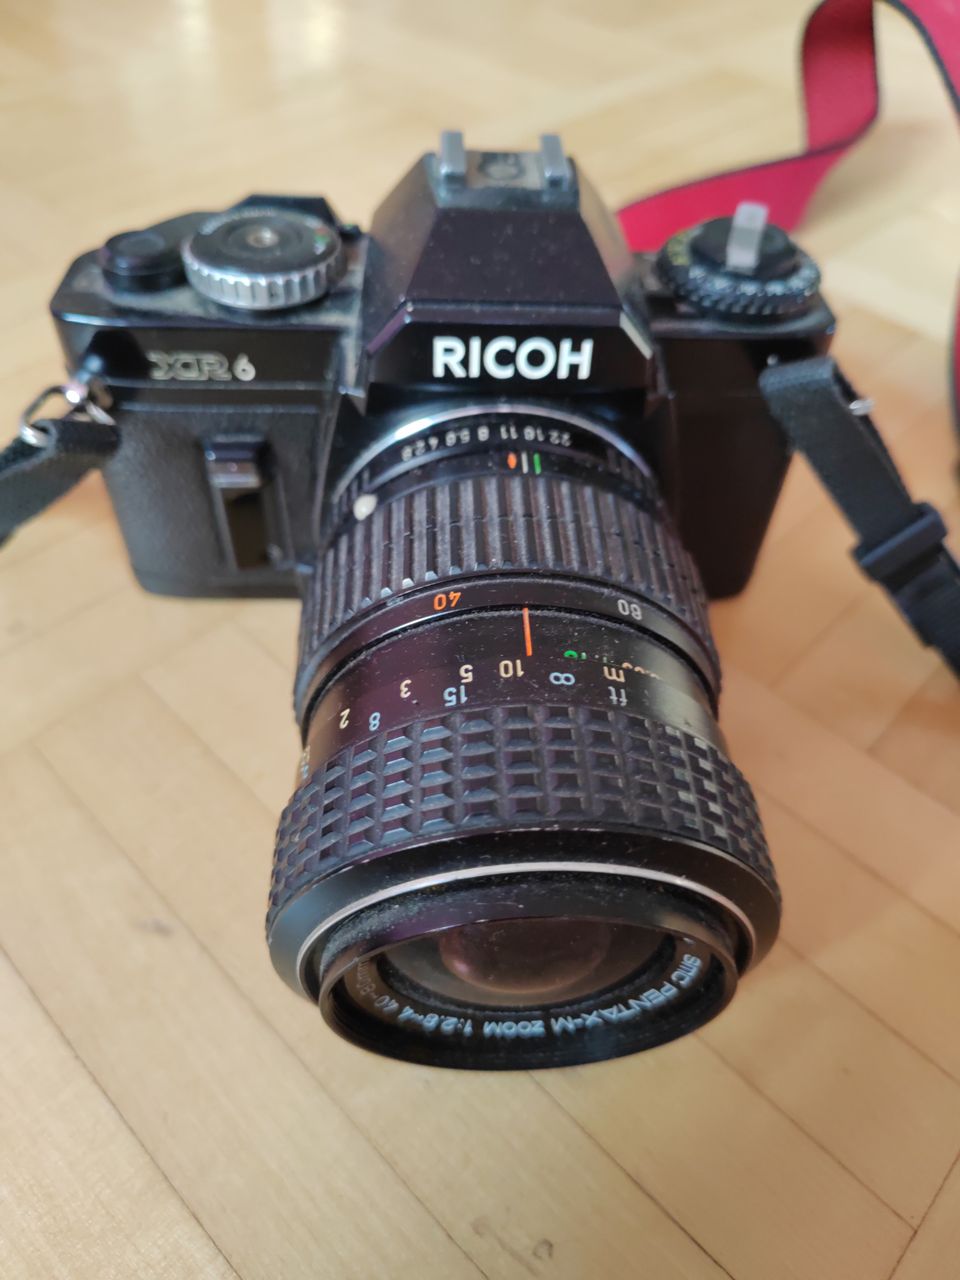 Ricoh XR 6 kamera ja linssi